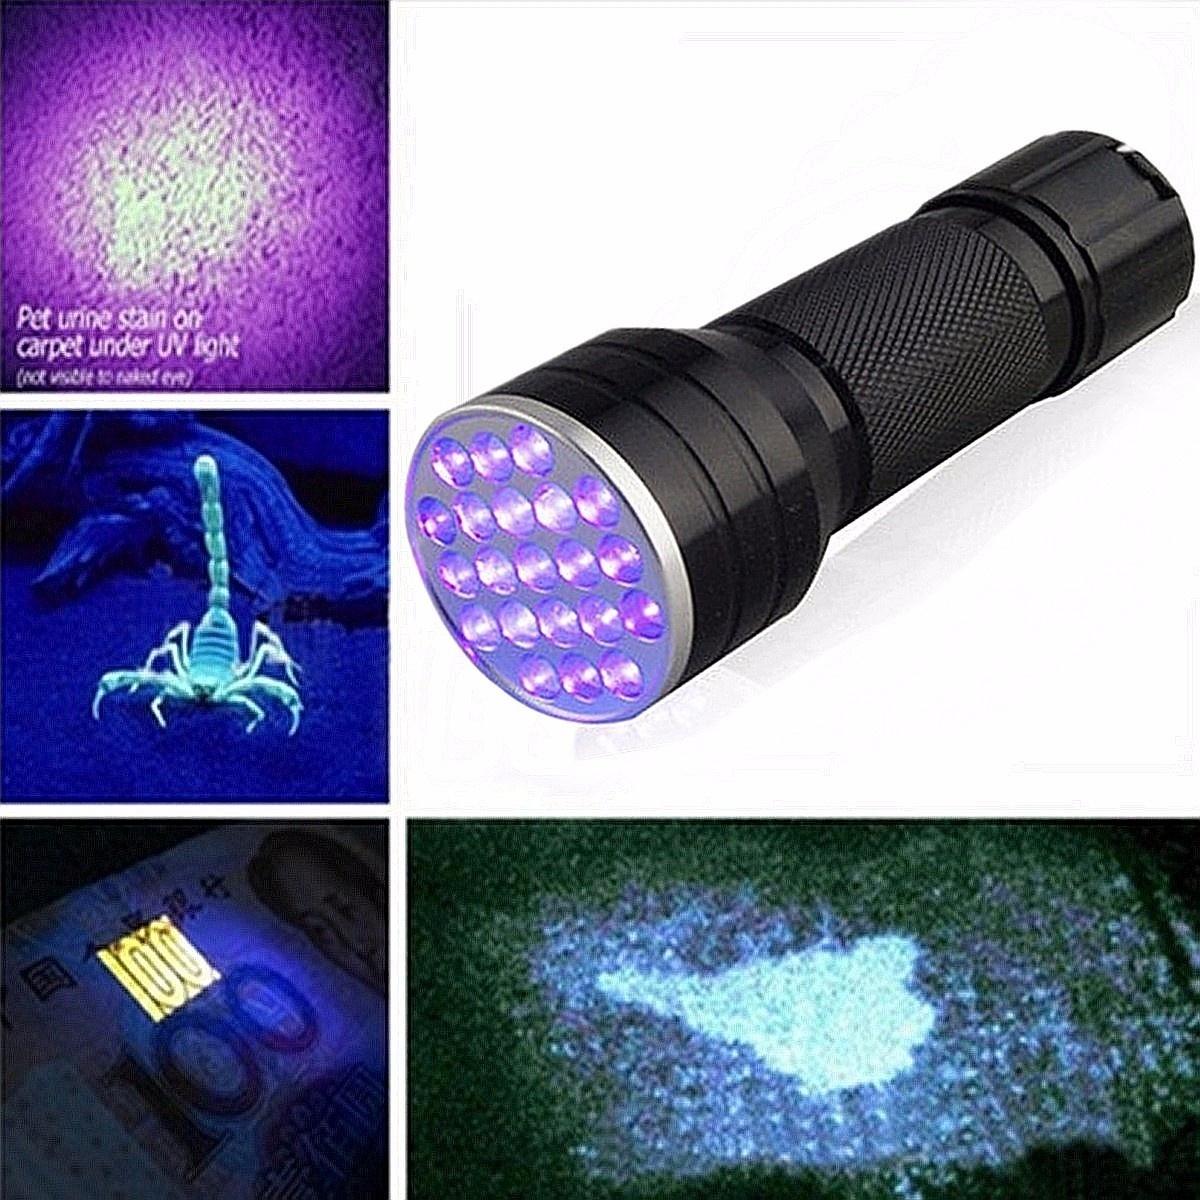 

Aluminum Alloy 21LED UV Ultra Violet Mini Blacklight Flashlight Torch Light Lamp Outdoor